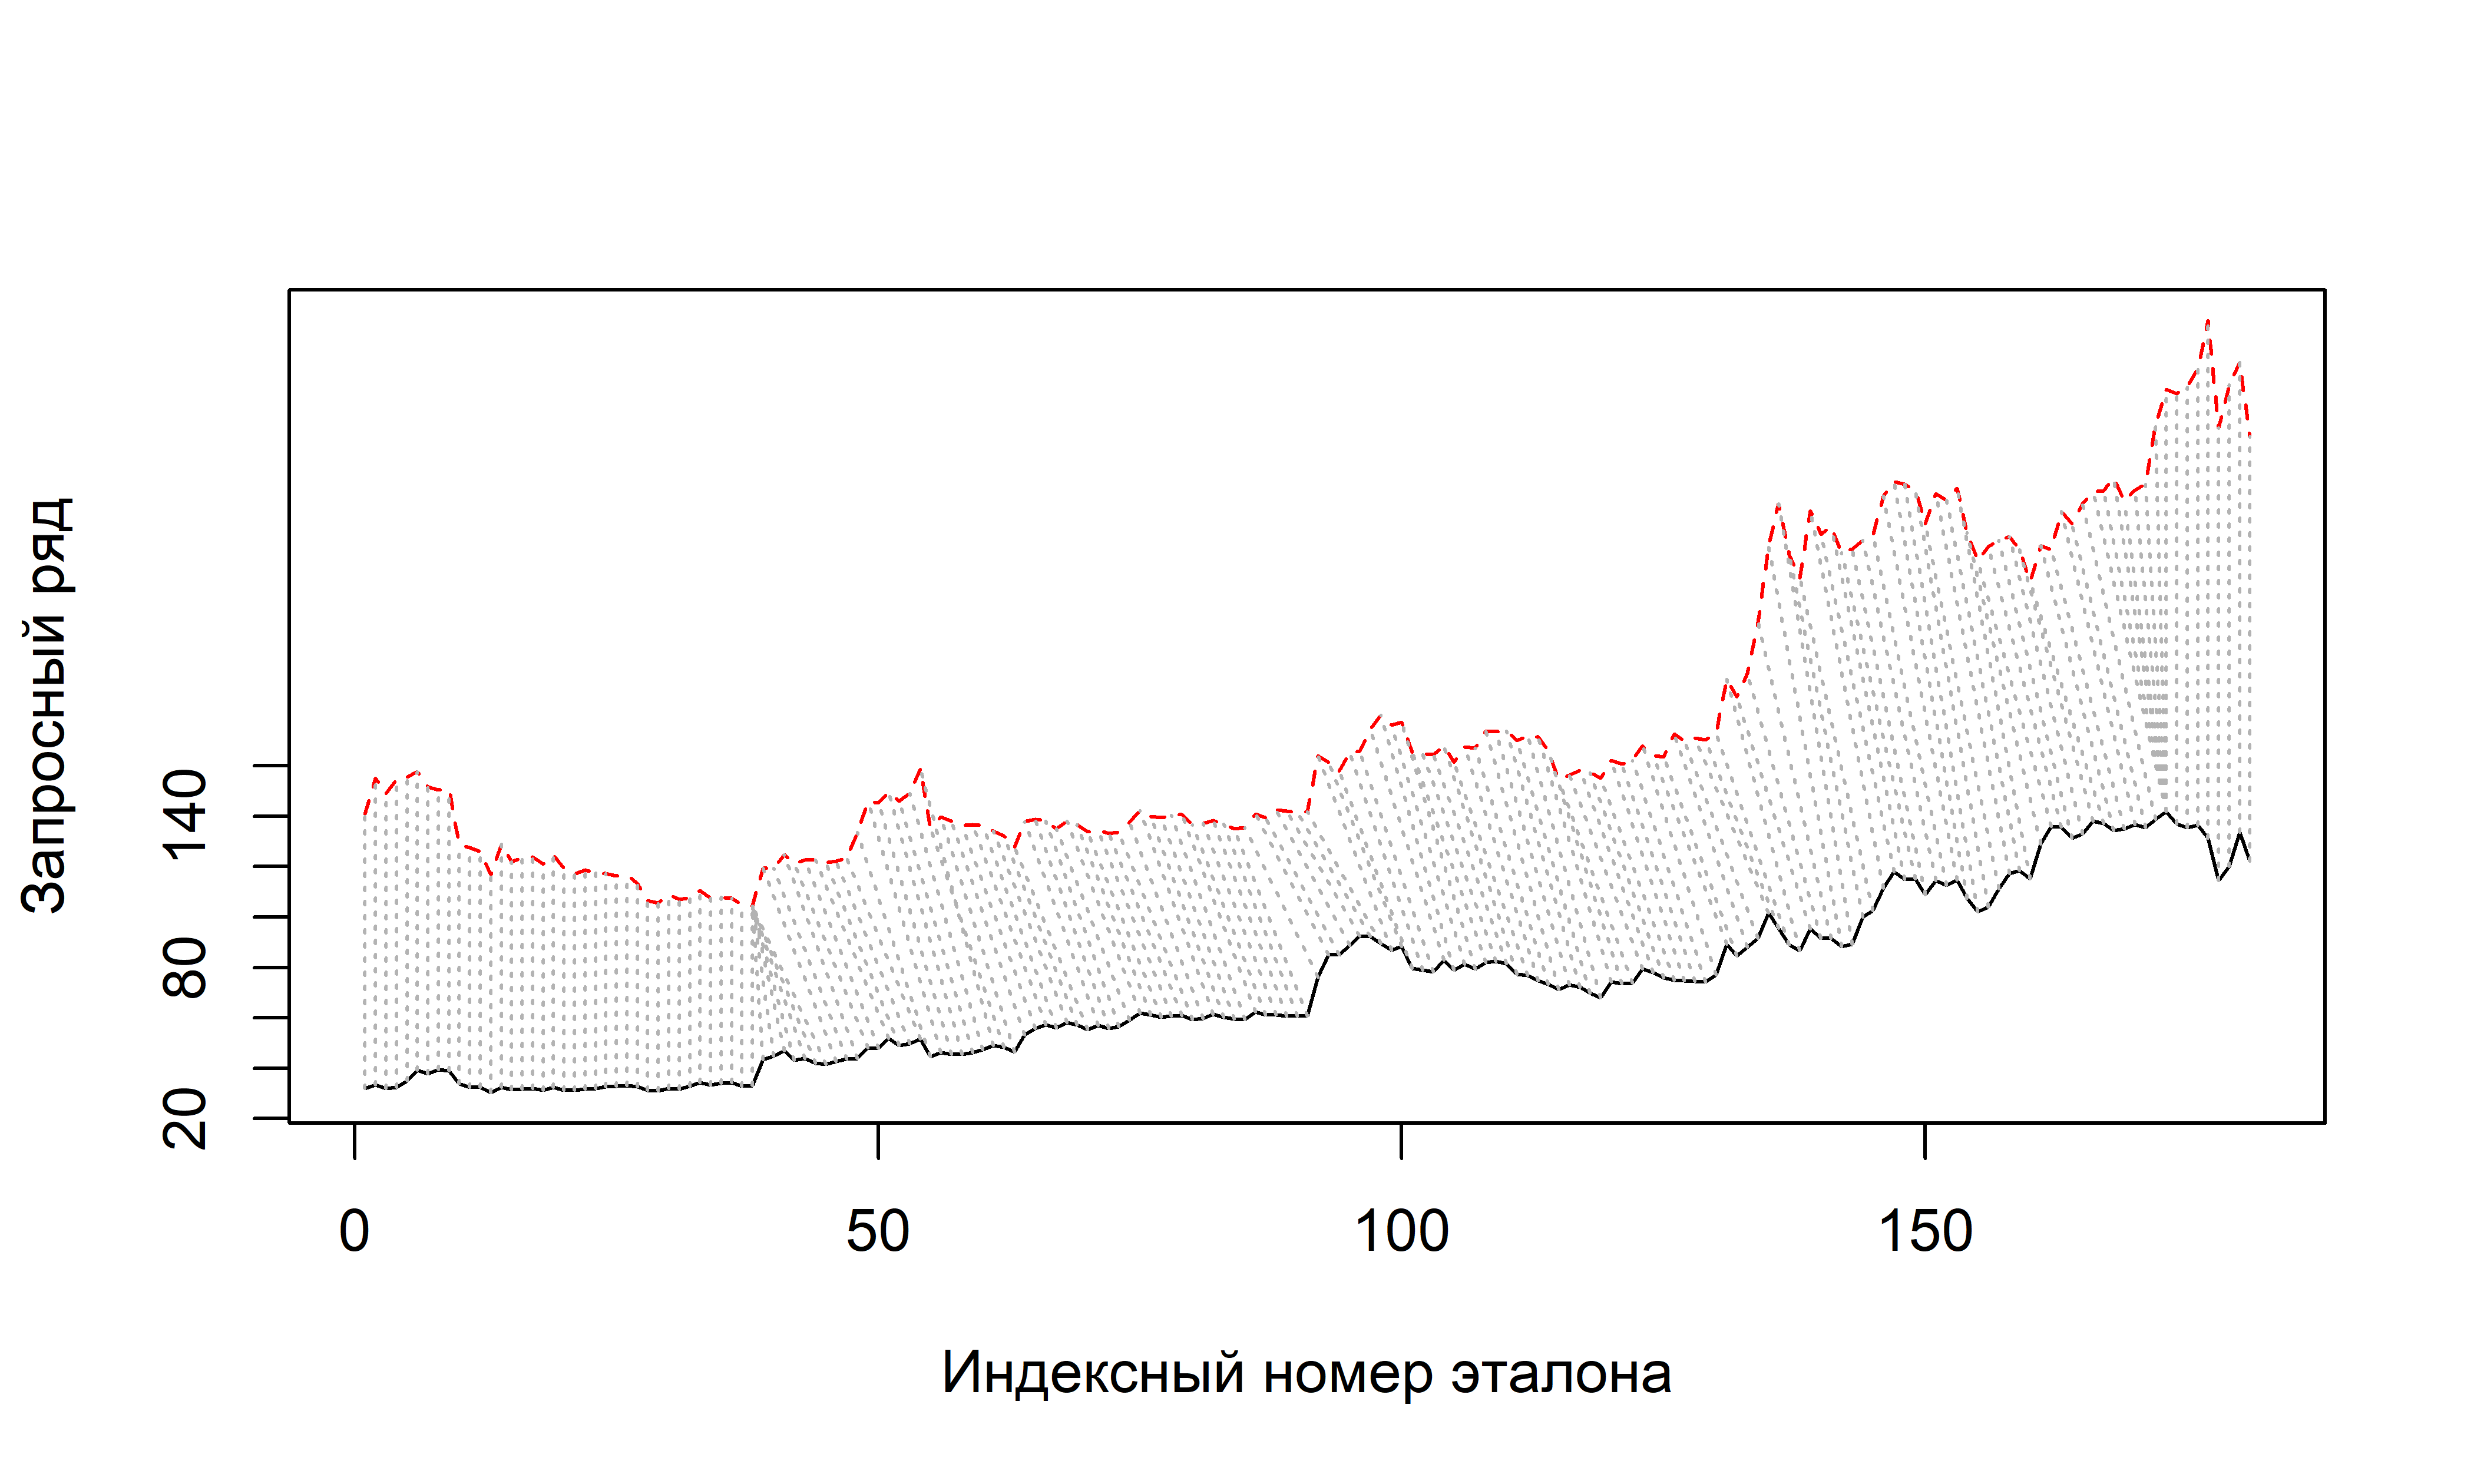 Результат оптимального сопоставления временных рядов стоимости криптовалют ethereum (красная прерывистая линия) и litecoin (черная сплошная линия), полученный с помощью алгоритма DTW (сравните с рис. 11.1). В алгоритме были использованы параметры, приведенные в коде для рис. 11.4